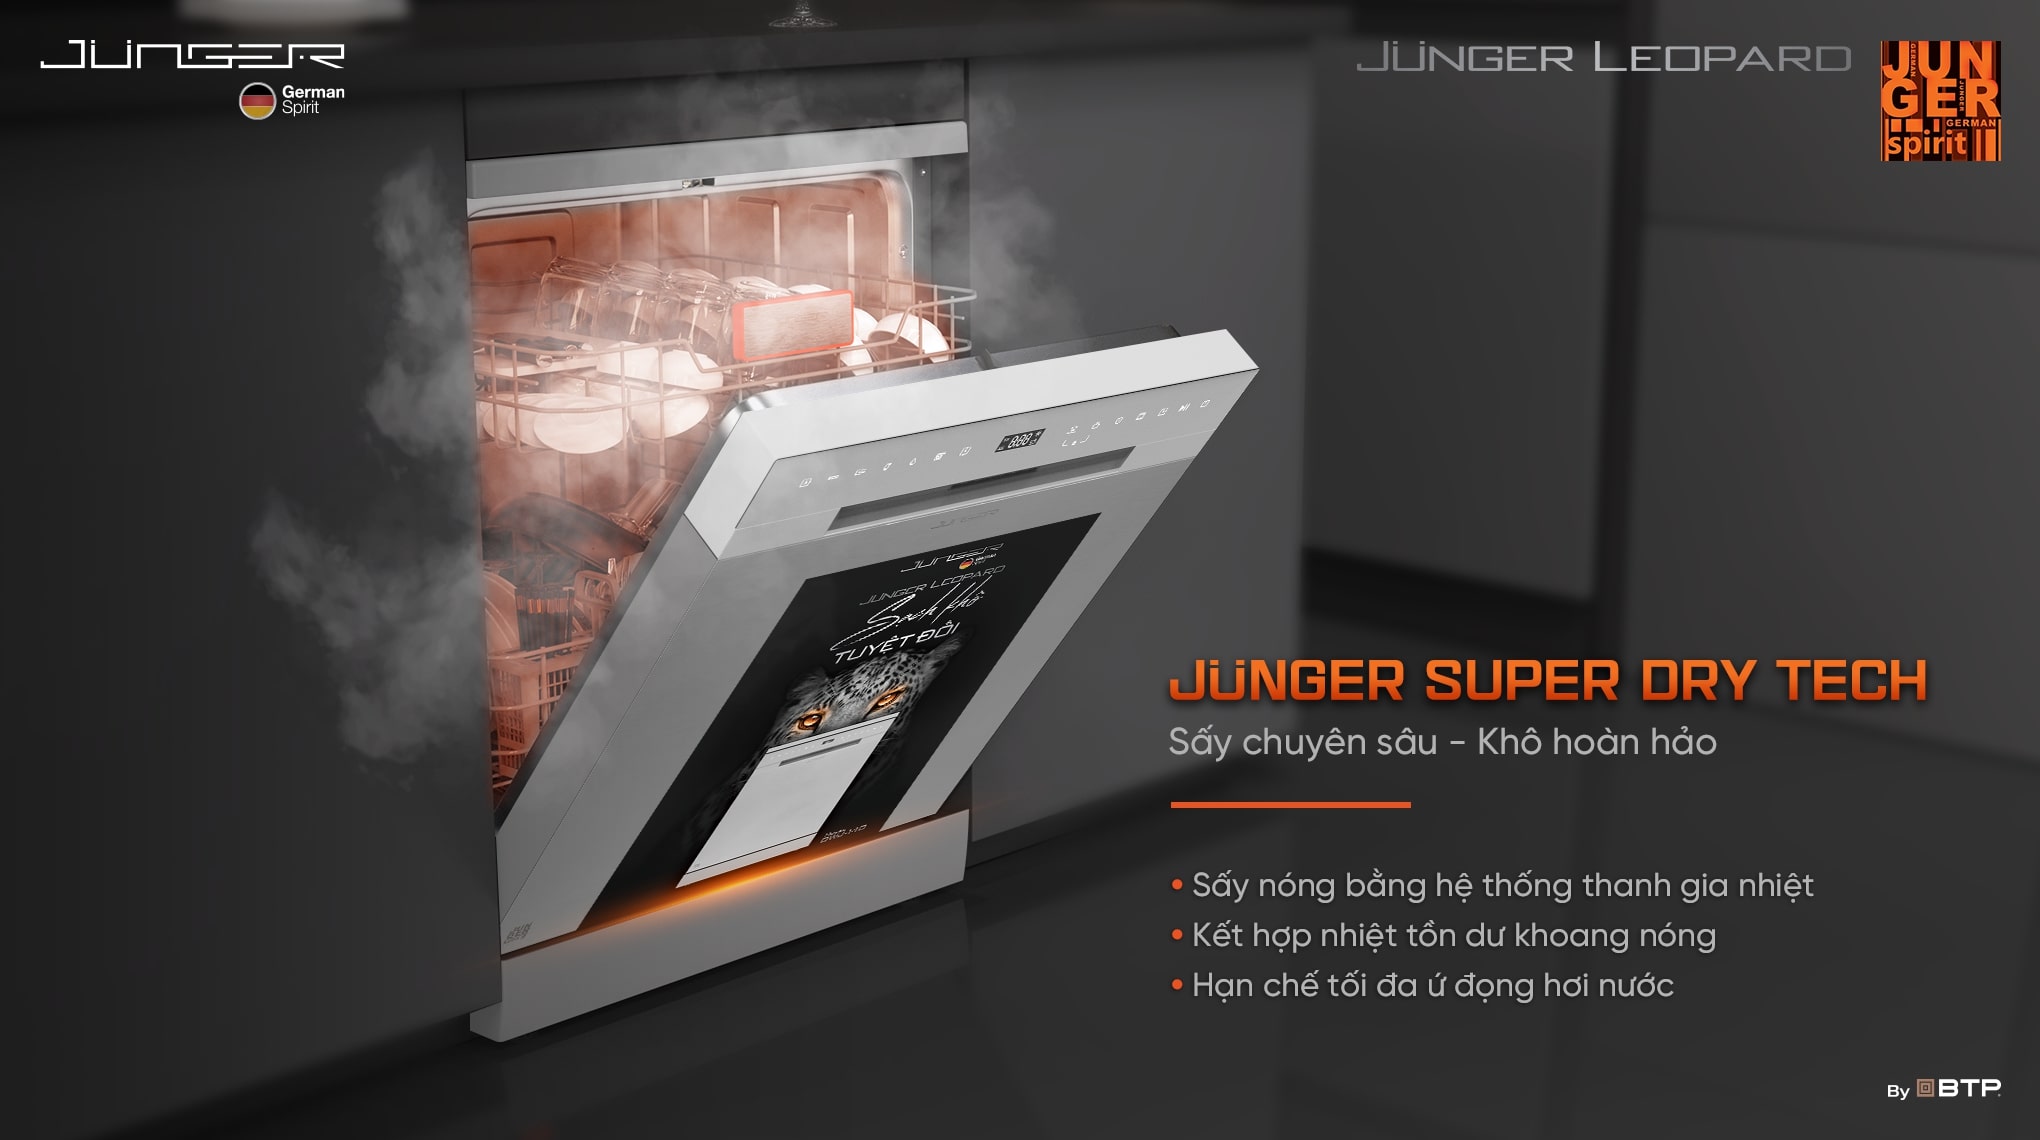 Công nghệ sấy nóng Junger Super Dry Tech hỗ trợ làm khô tăng cường cho toàn bộ chén bát tốt hơn